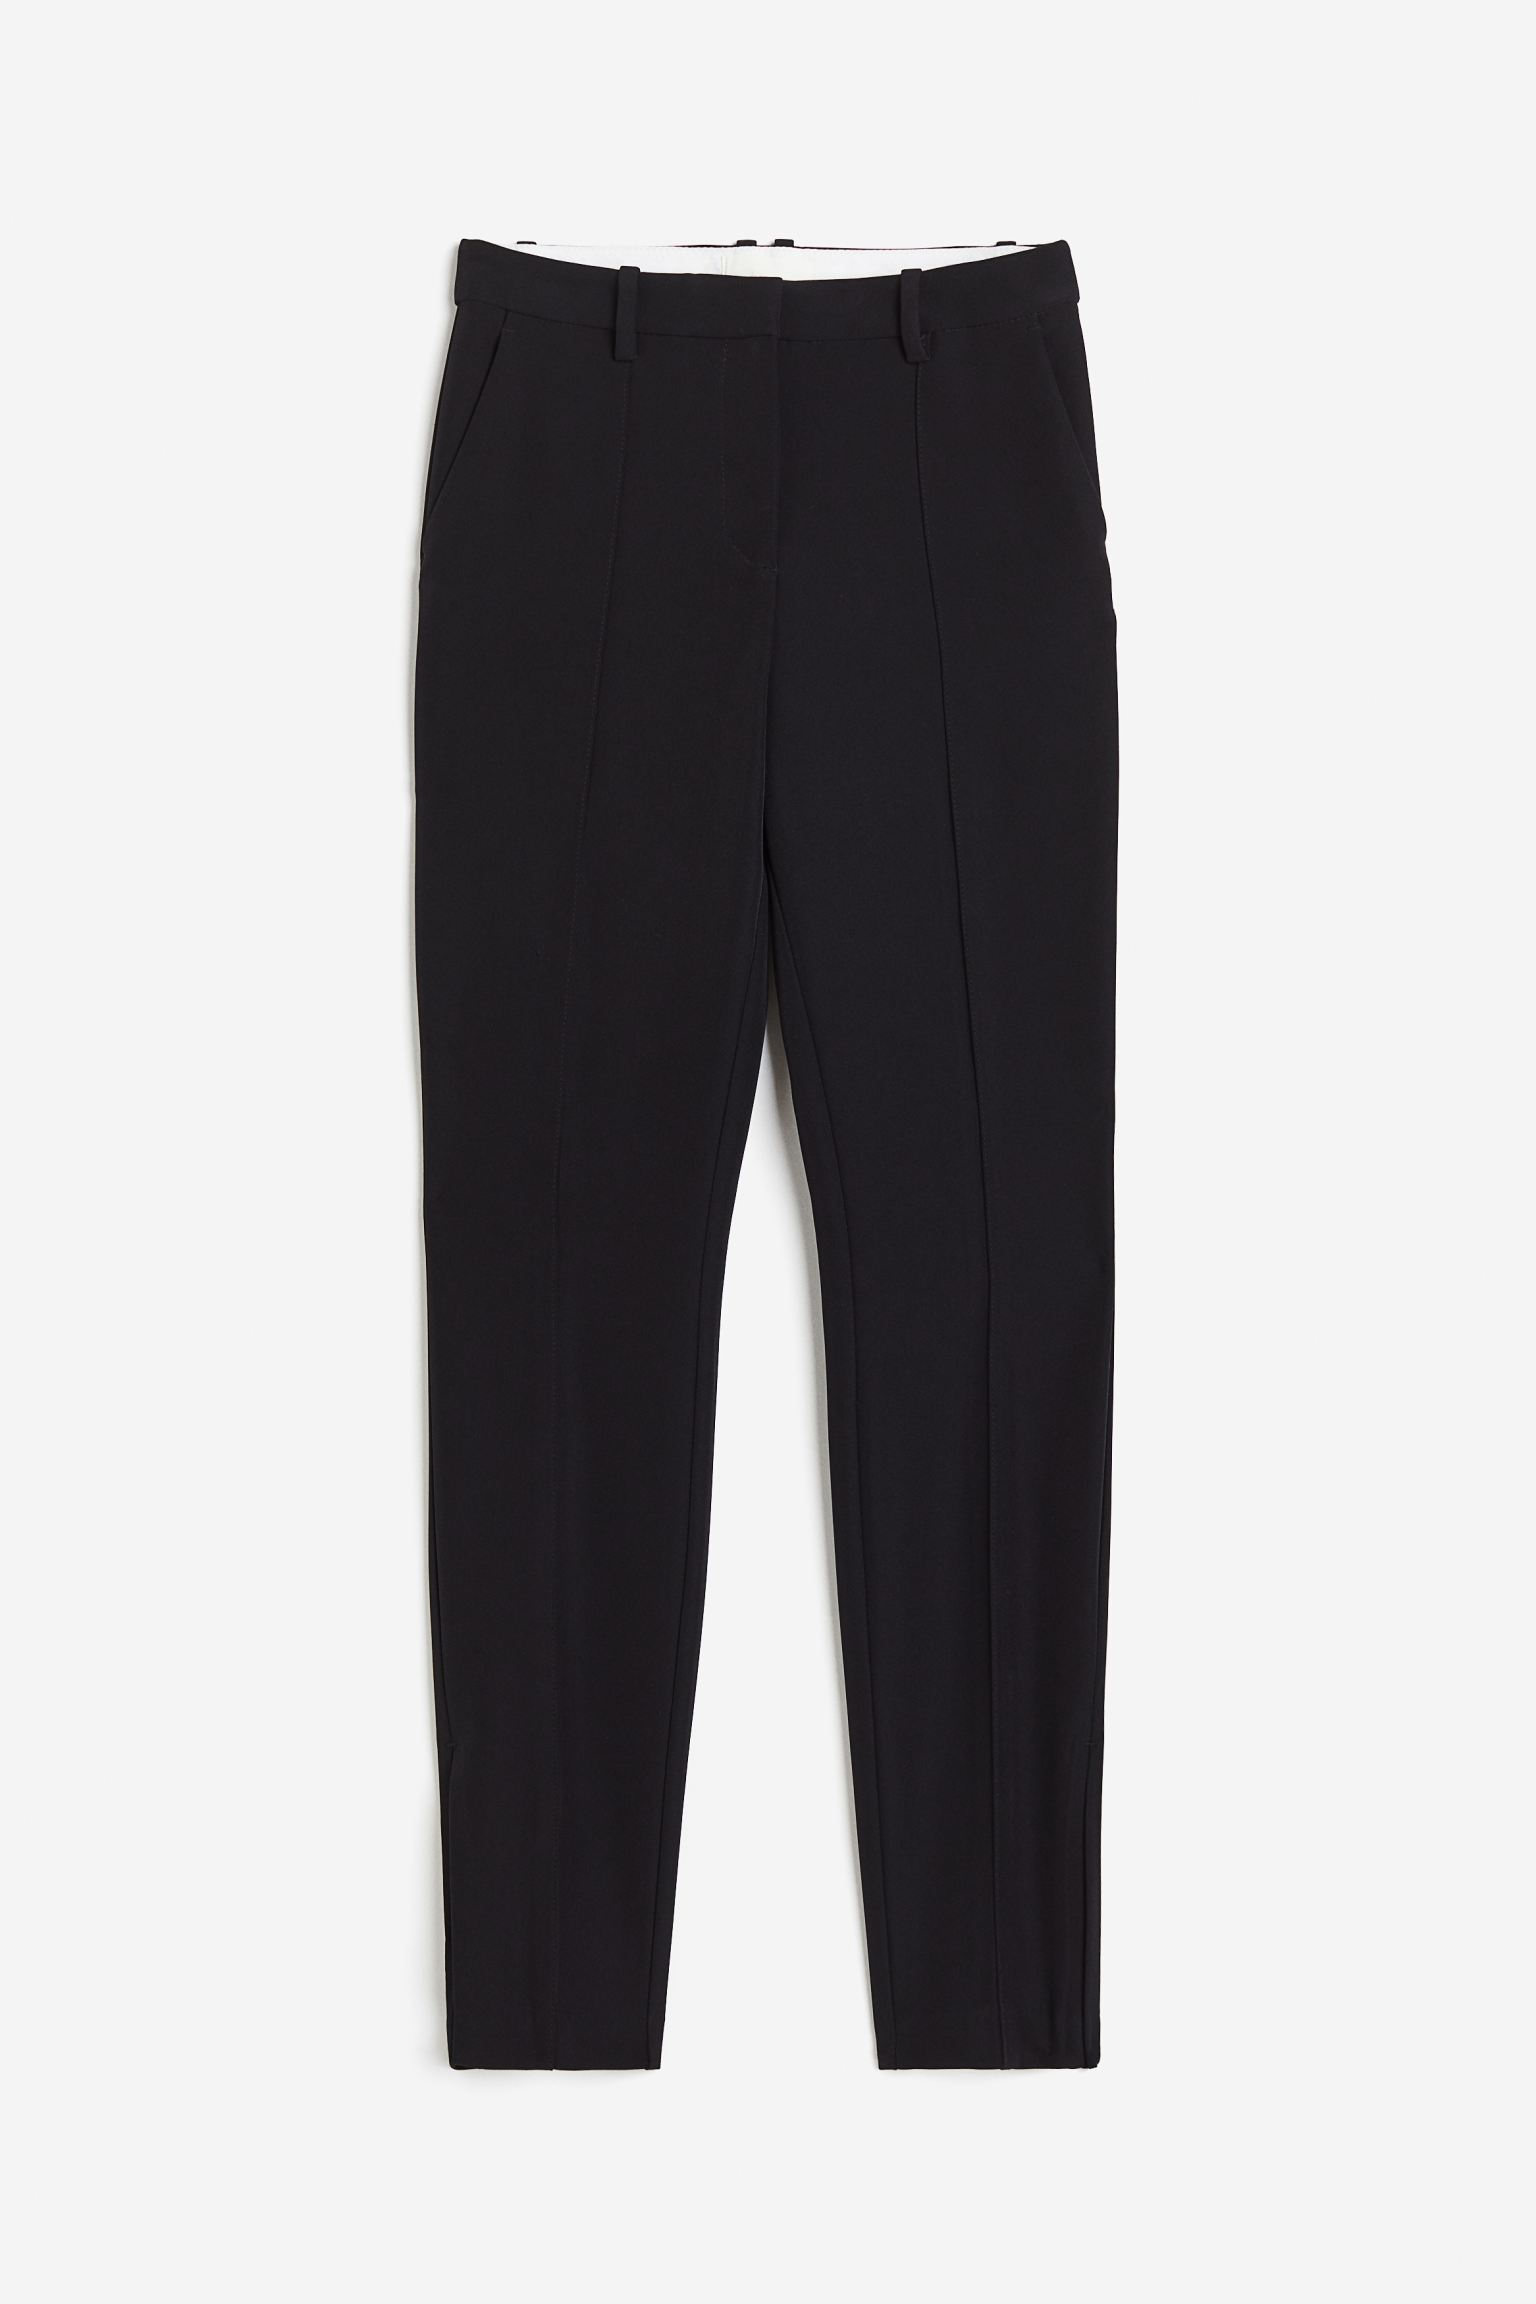 Брюки H&M Slit-hem, черный узкие брюки со складками спереди fransa curve stretch коричневый